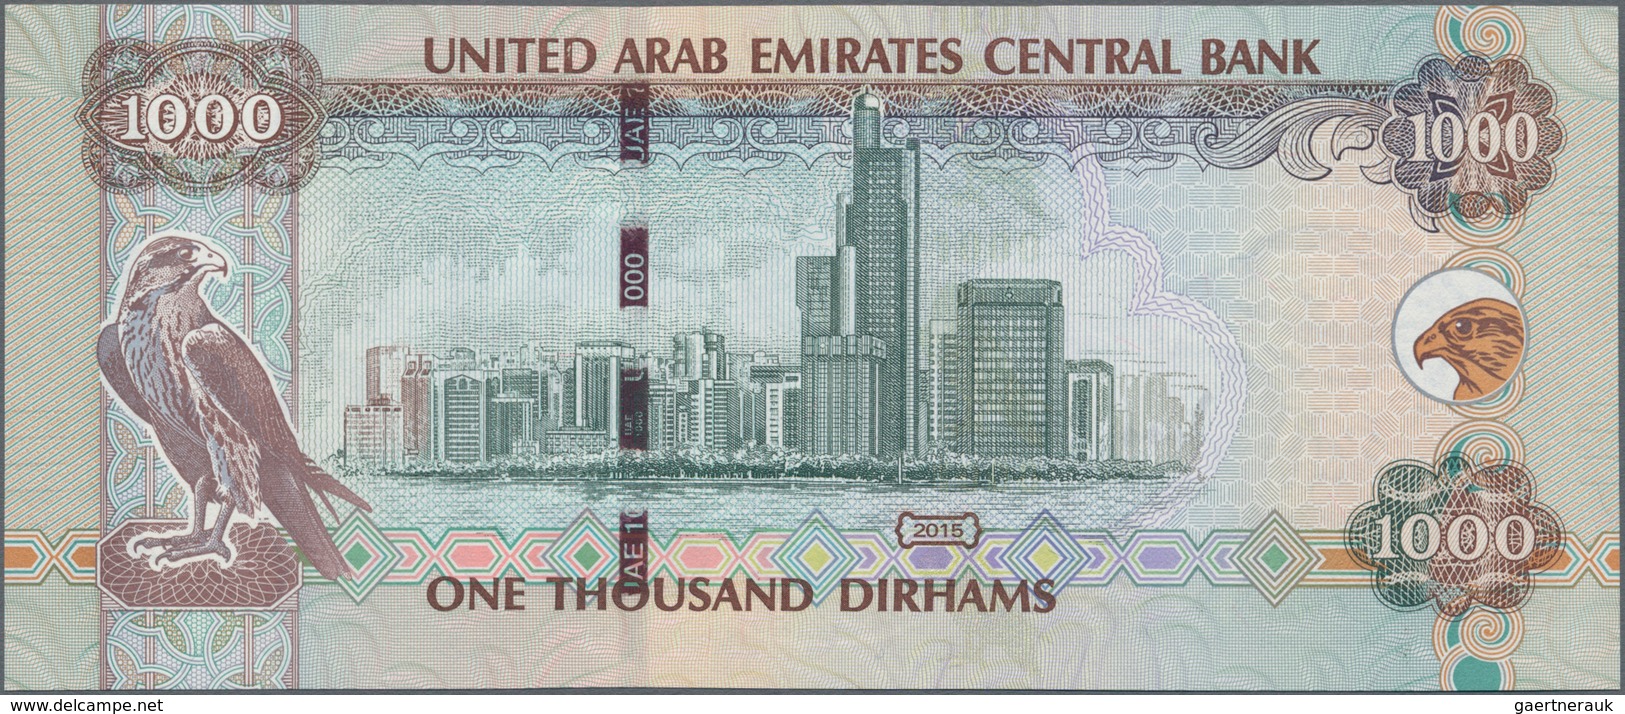 United Arab Emirates / Vereinigte Arabische Emirate: United Arab Emirates Central Bank 1000 Dirhams - Emiratos Arabes Unidos